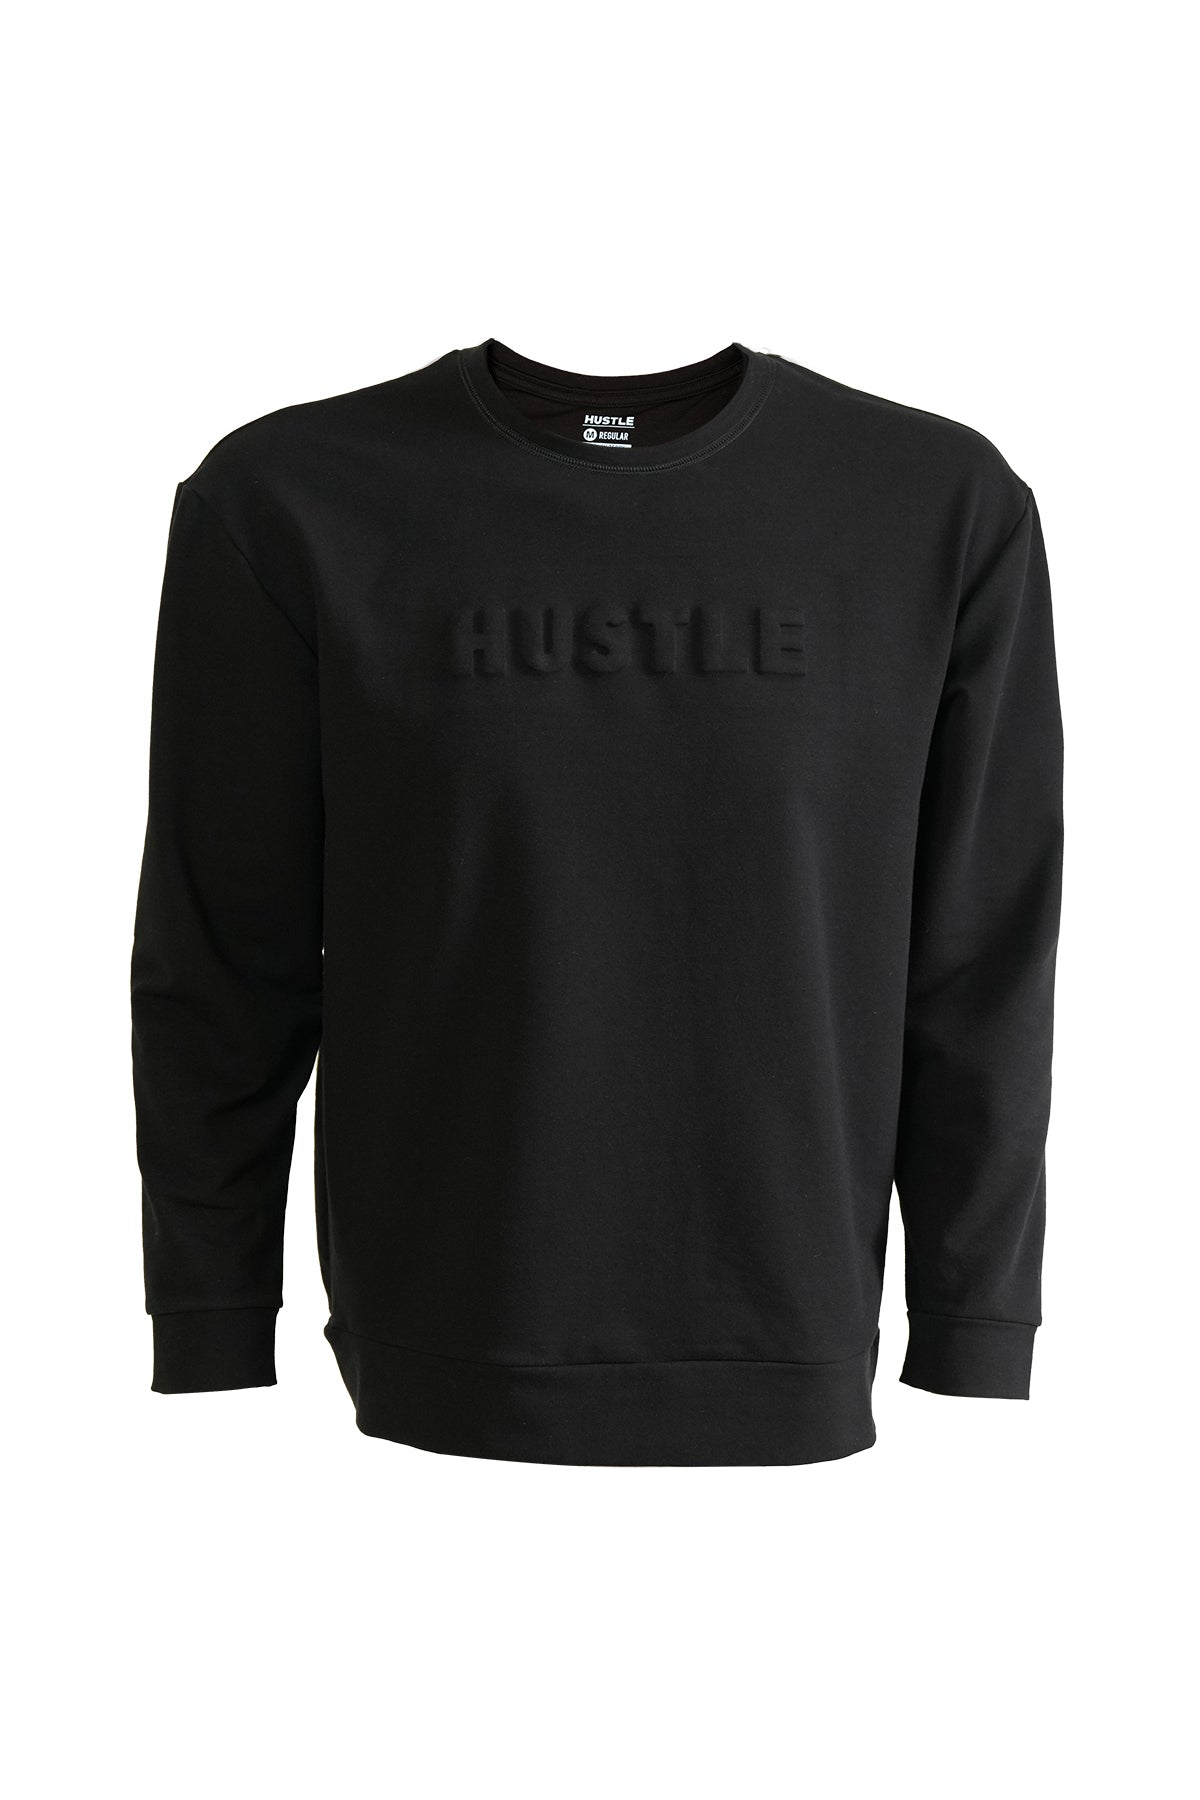 Hustle Men's Long Sleeve Casual Sweater